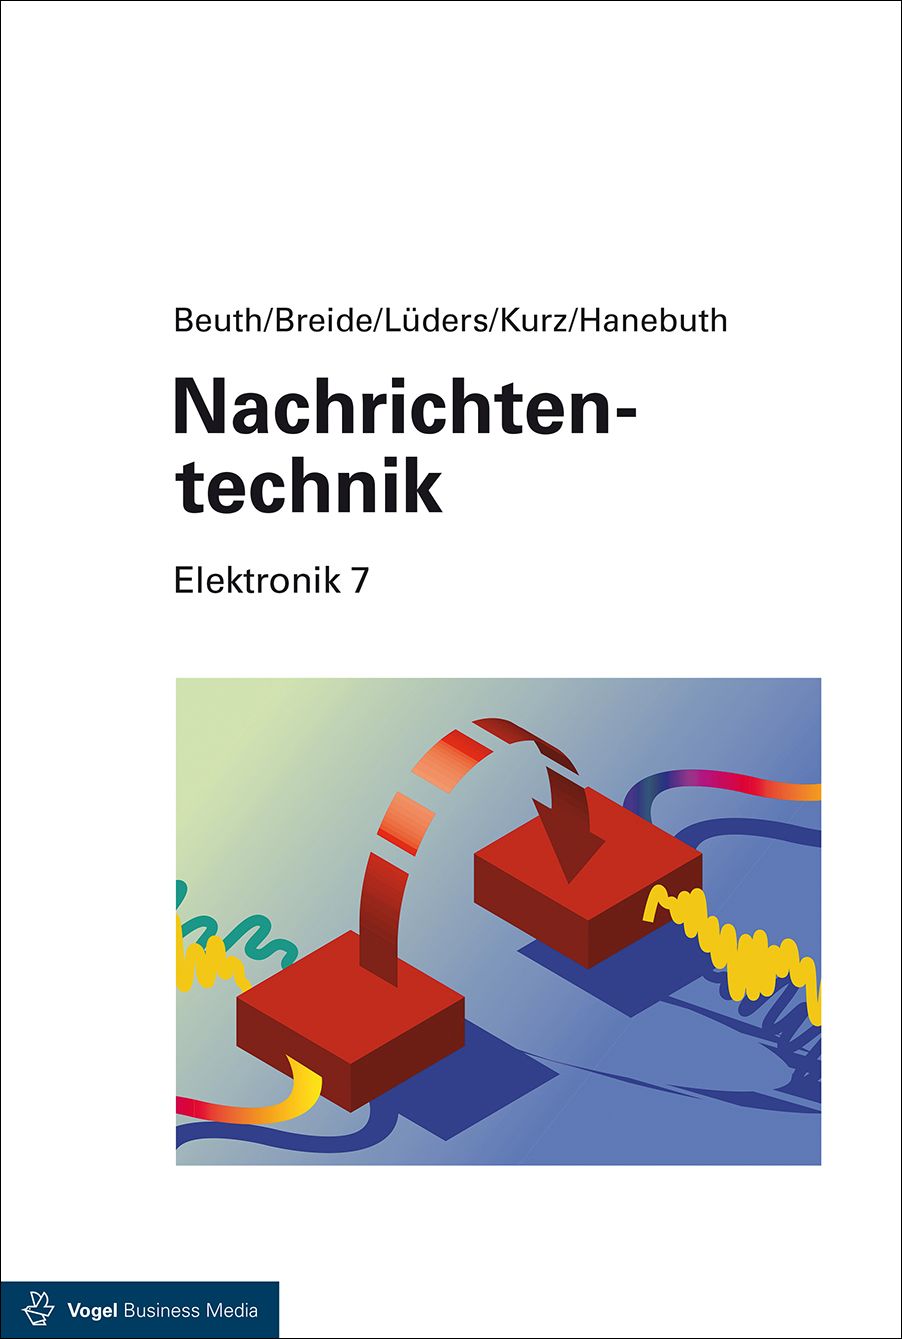 Das Fachbuch "Elektronik 7: Nachrichtentechnik" von 